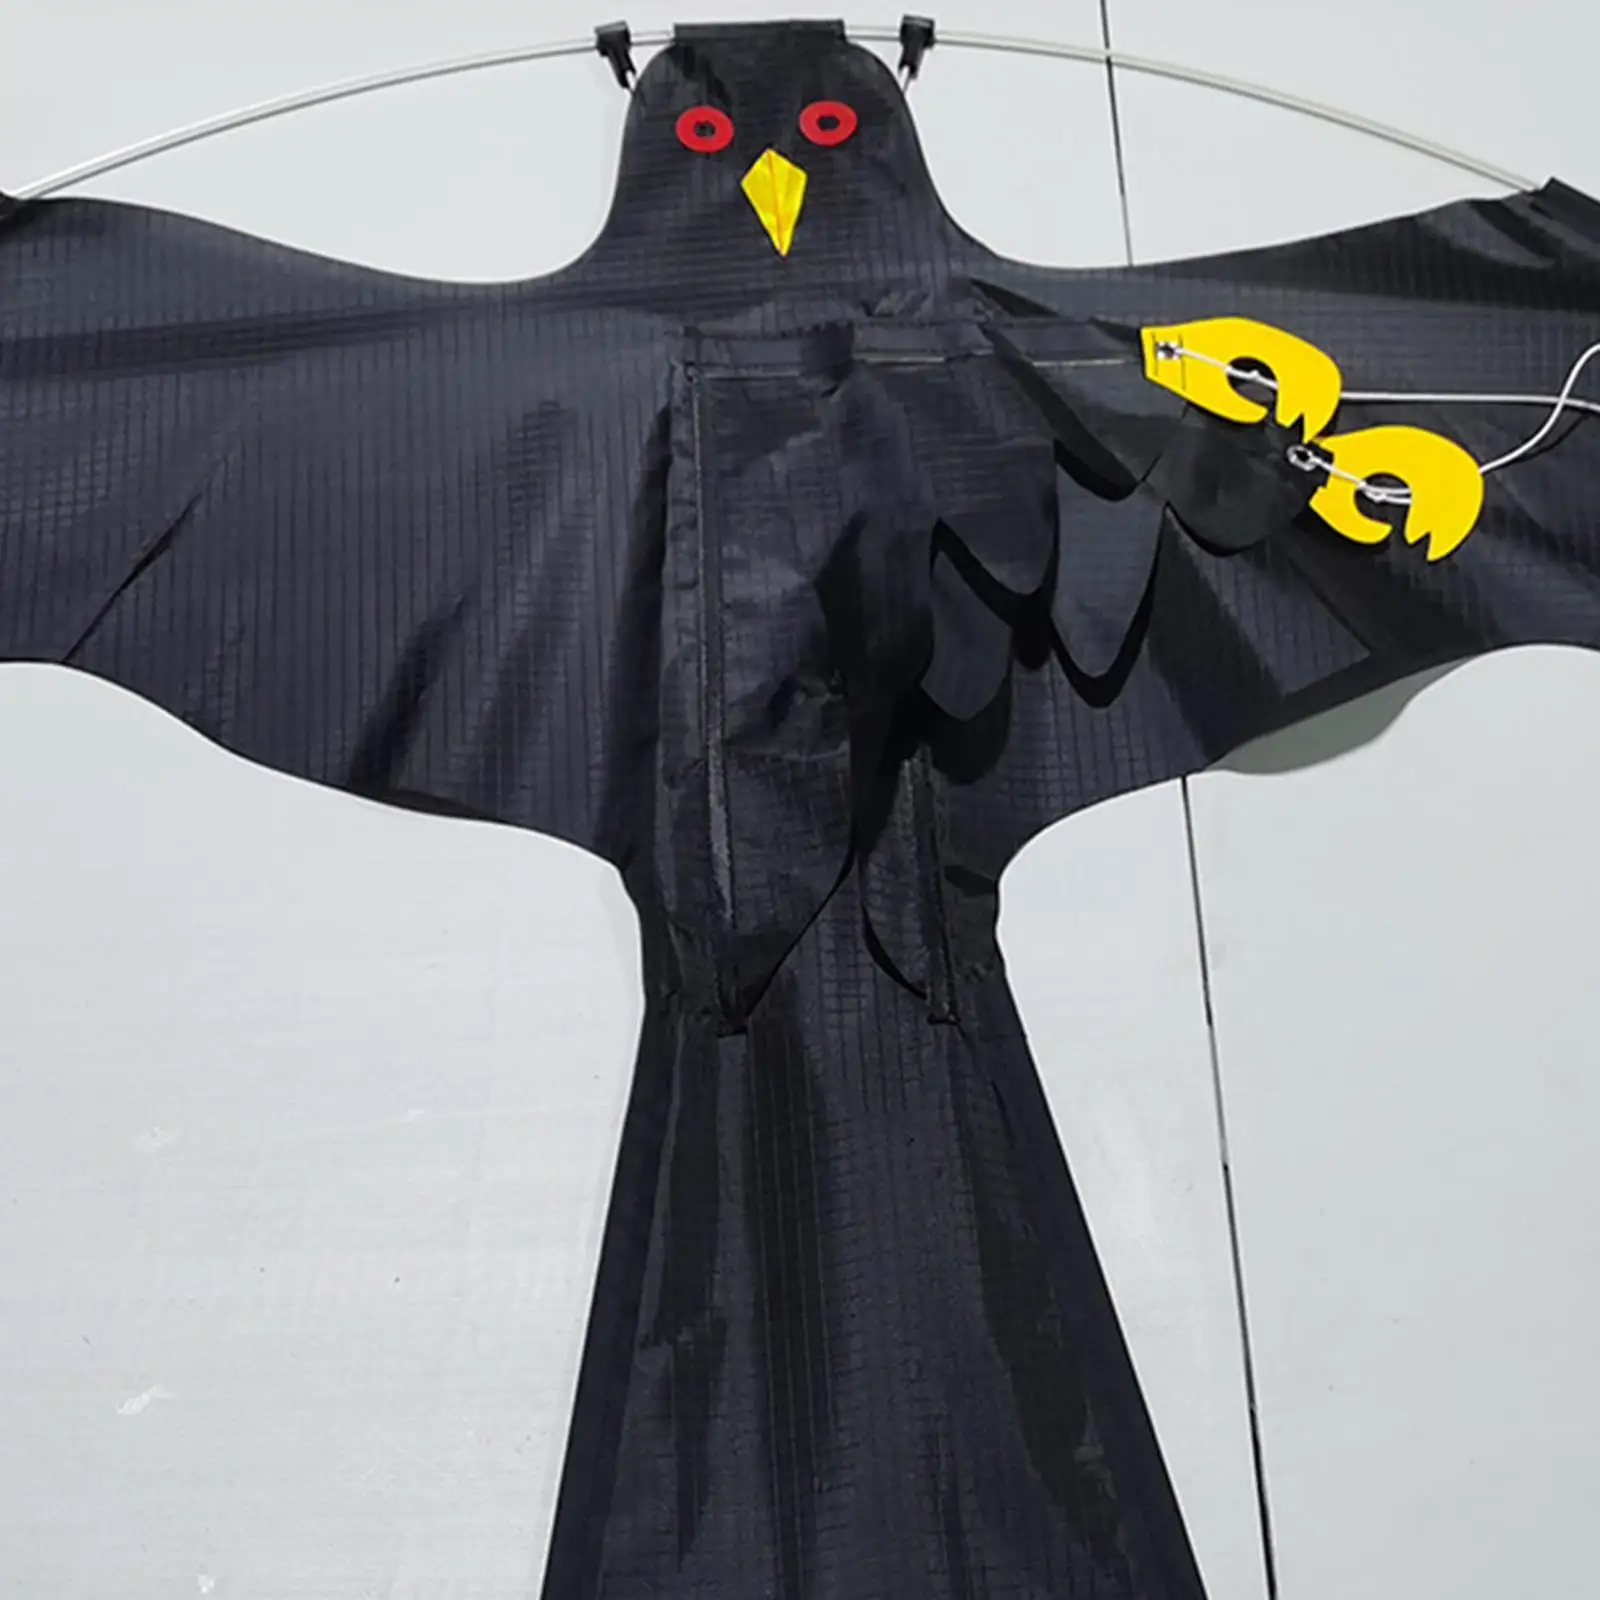 

Lifelike Large Flying Hawk Kite Bird Repeller Pigeon Decoy Weed Pest Control black